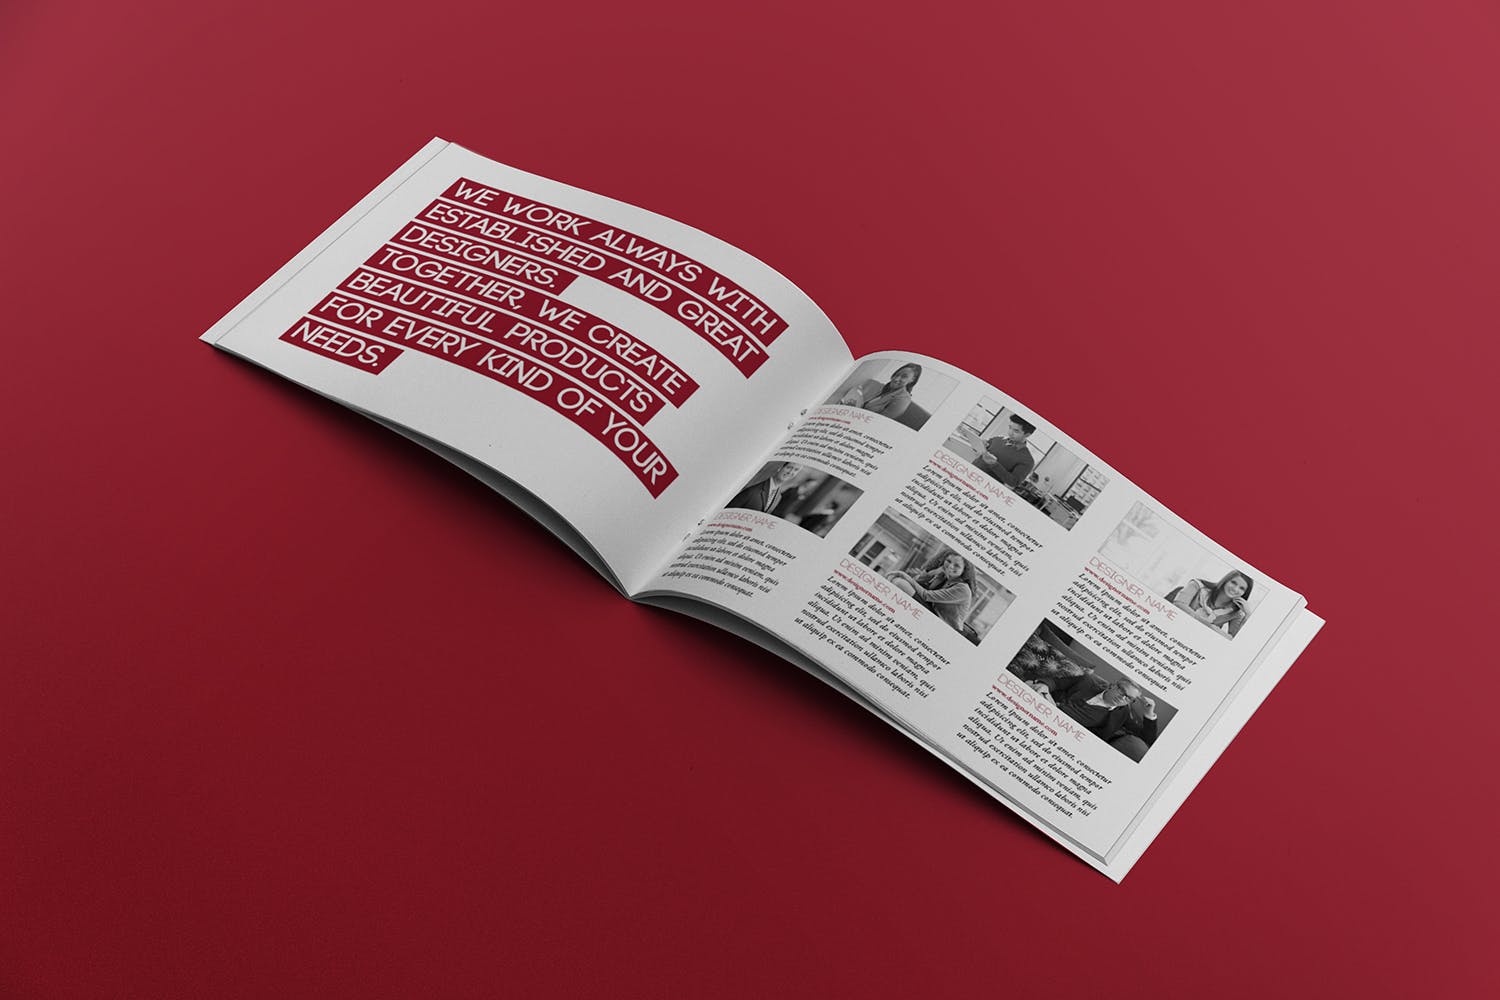 宣传画册/企业画册内页版式设计图样机素材库精选 Open Landscape Brochure Mockup插图(2)